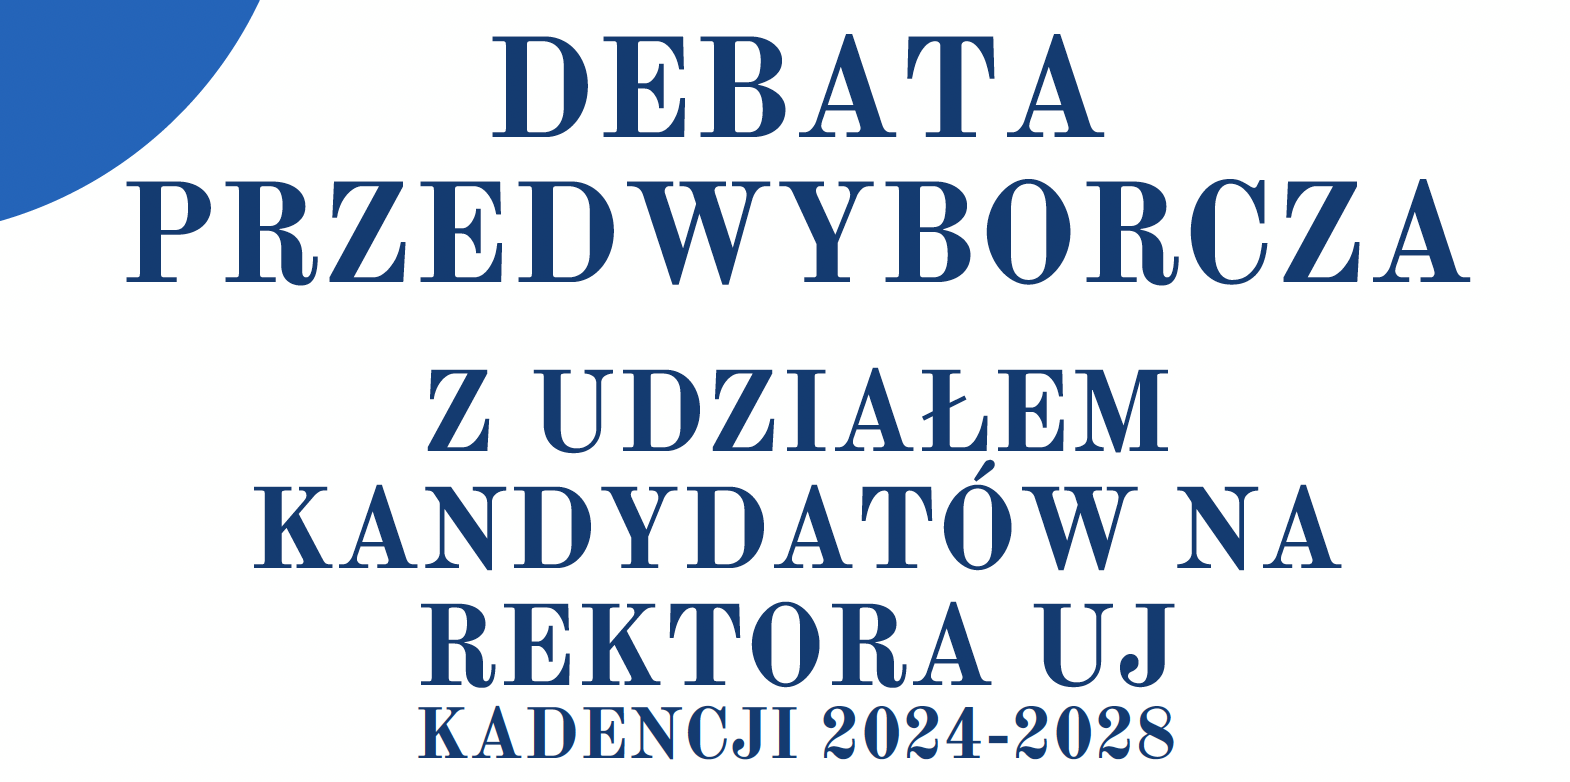 Zaproszenie na debatę kandydatów na Rektora UJ w kadencji 2024-2028